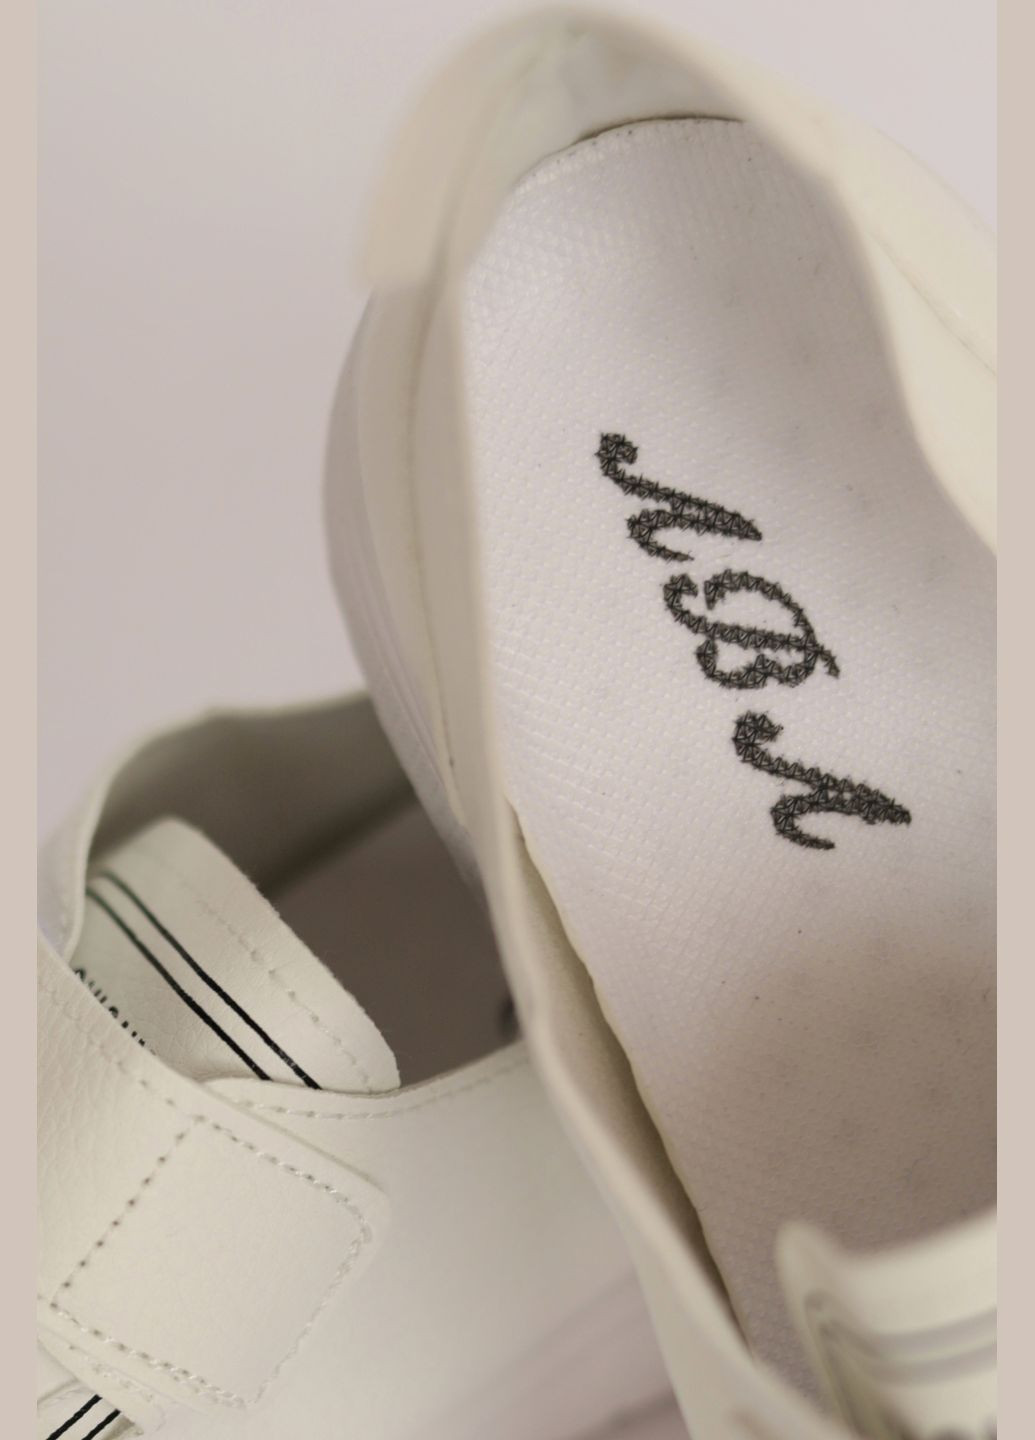 Білі осінні кросівки жіночі білого кольору на ліпучці Let's Shop